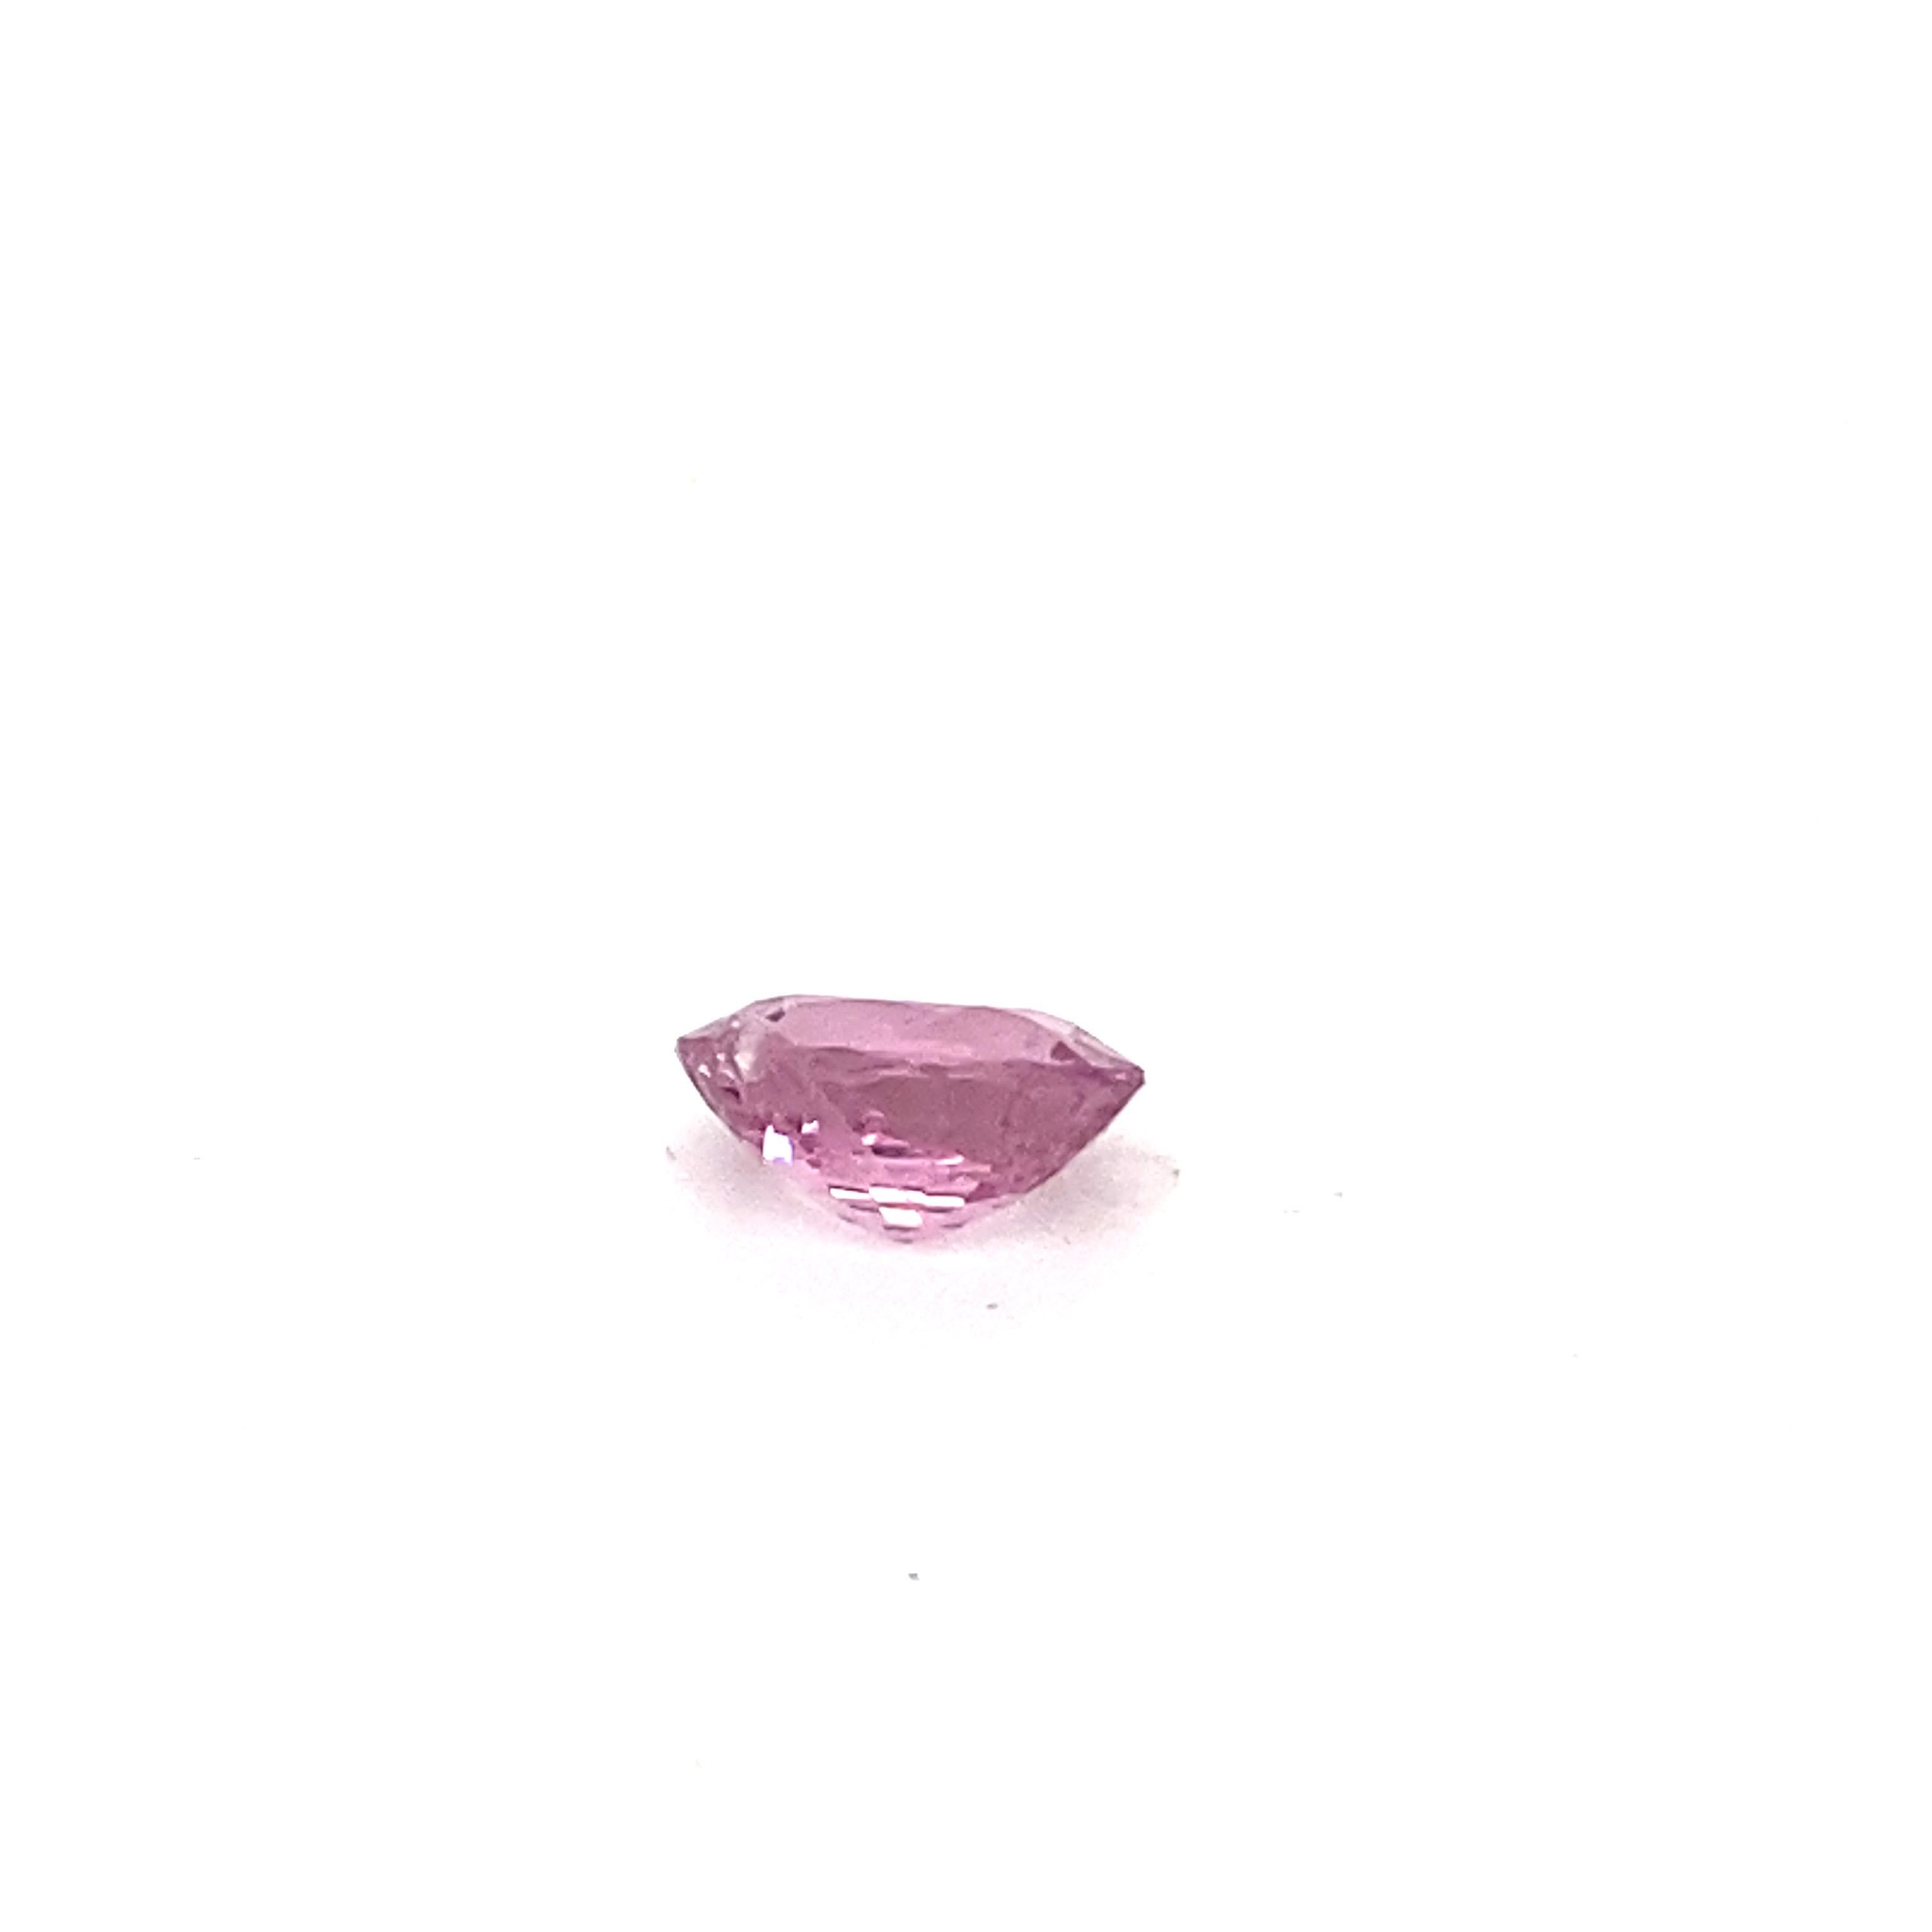 2.0 Carat Oval Shape Natural Pink Spinel Loose Gemstone For Sale 10